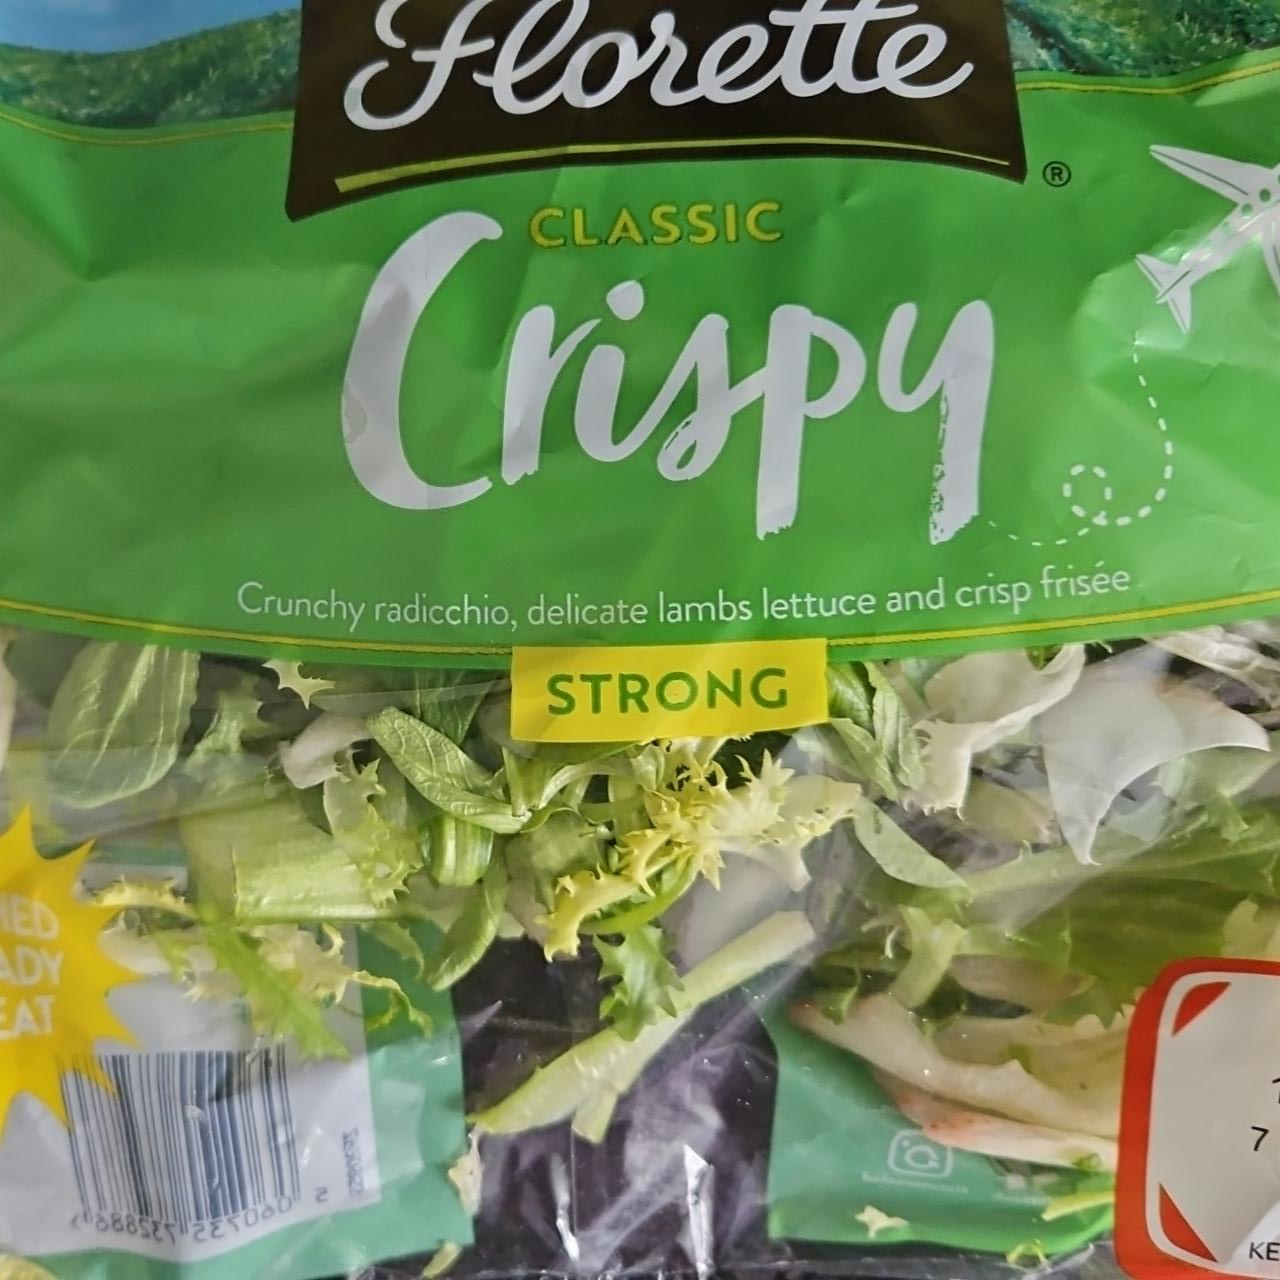 Fotografie - Classic crispy strong Florette